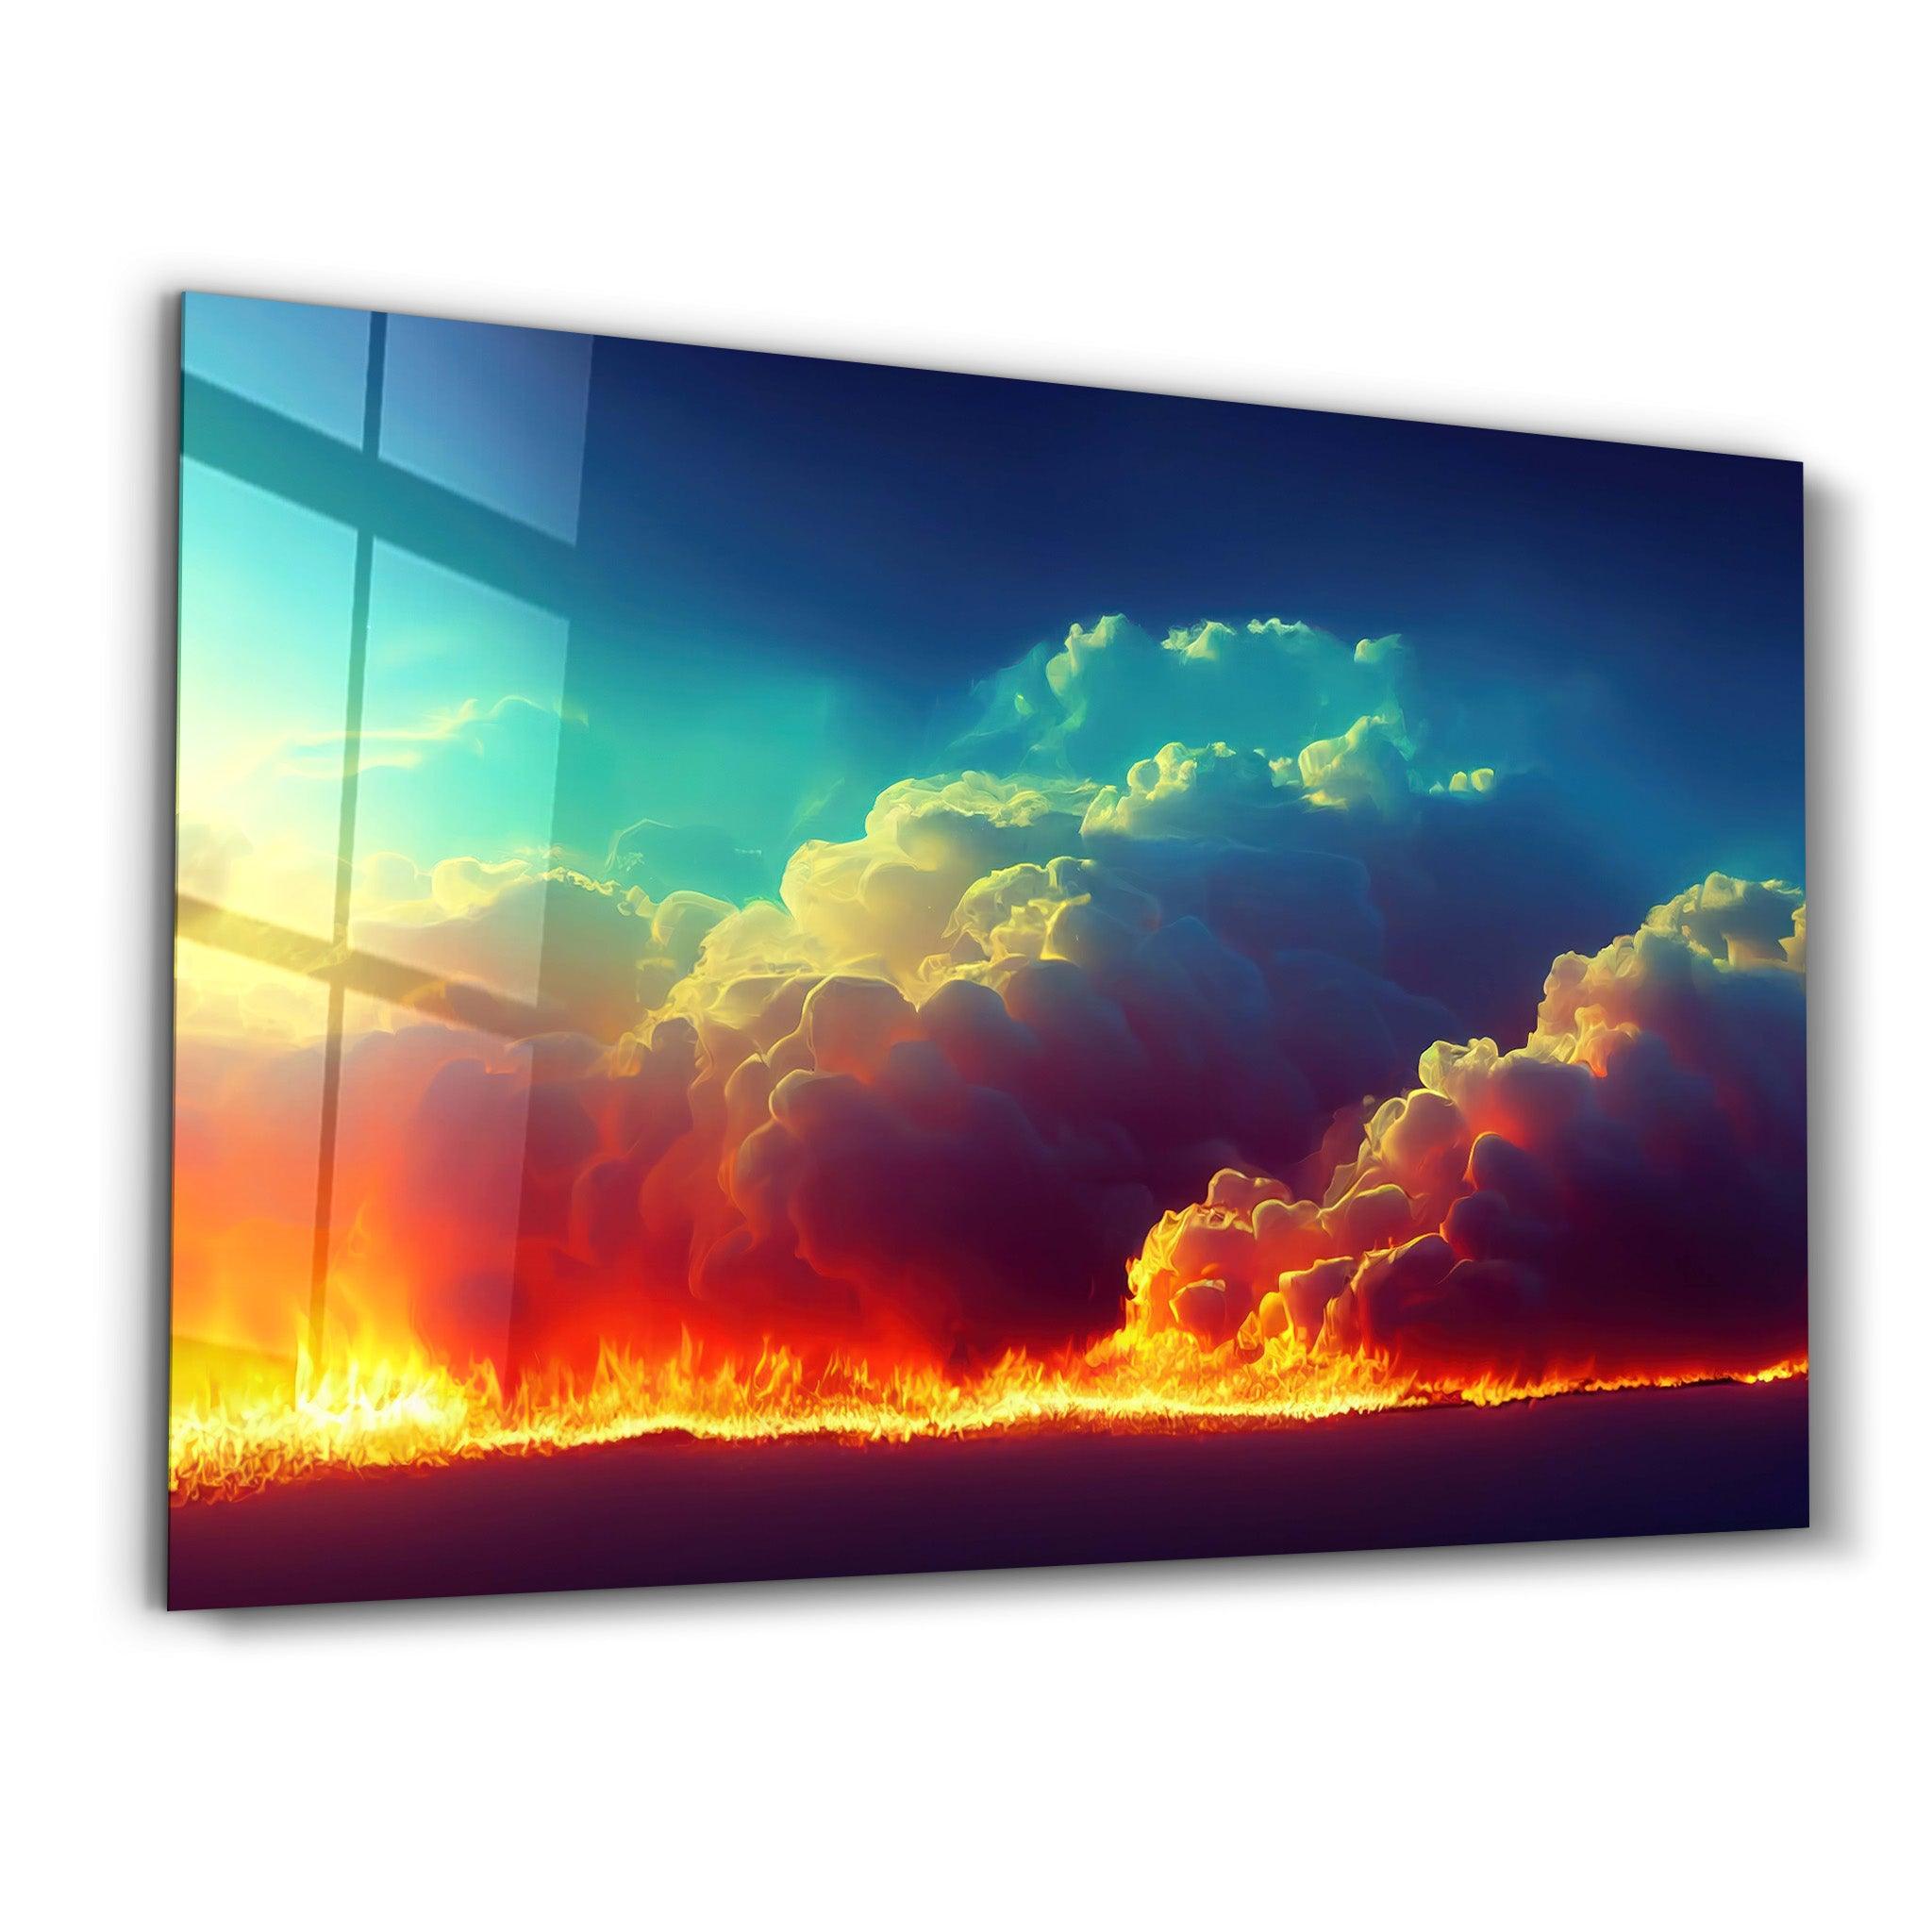 Fire Clouds | Motivational Glass Wall Art - ArtDesigna Glass Printing Wall Art